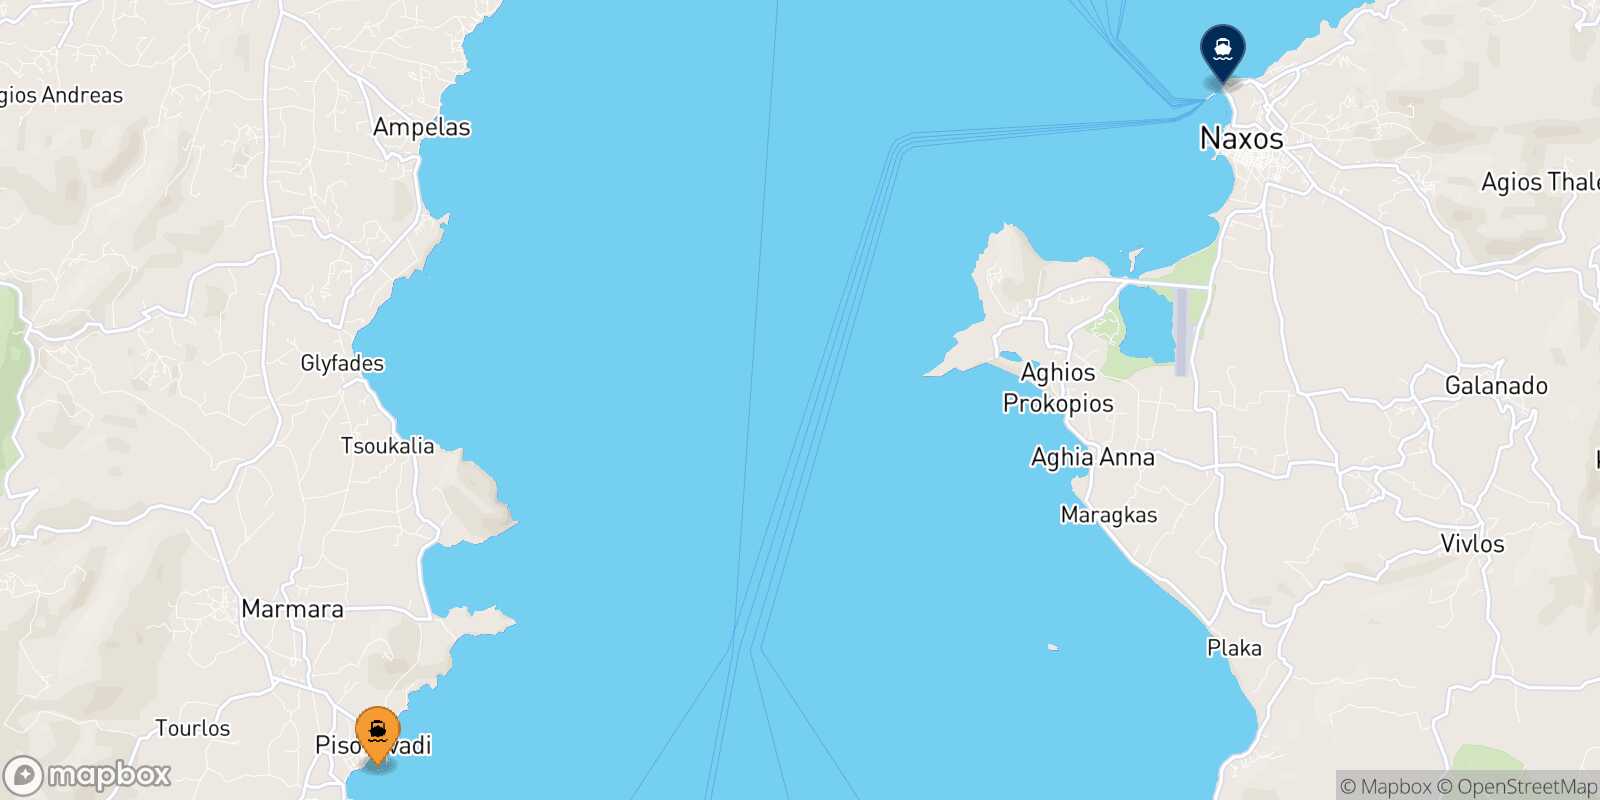 Mapa de la ruta Piso Livadi (Paros) Naxos